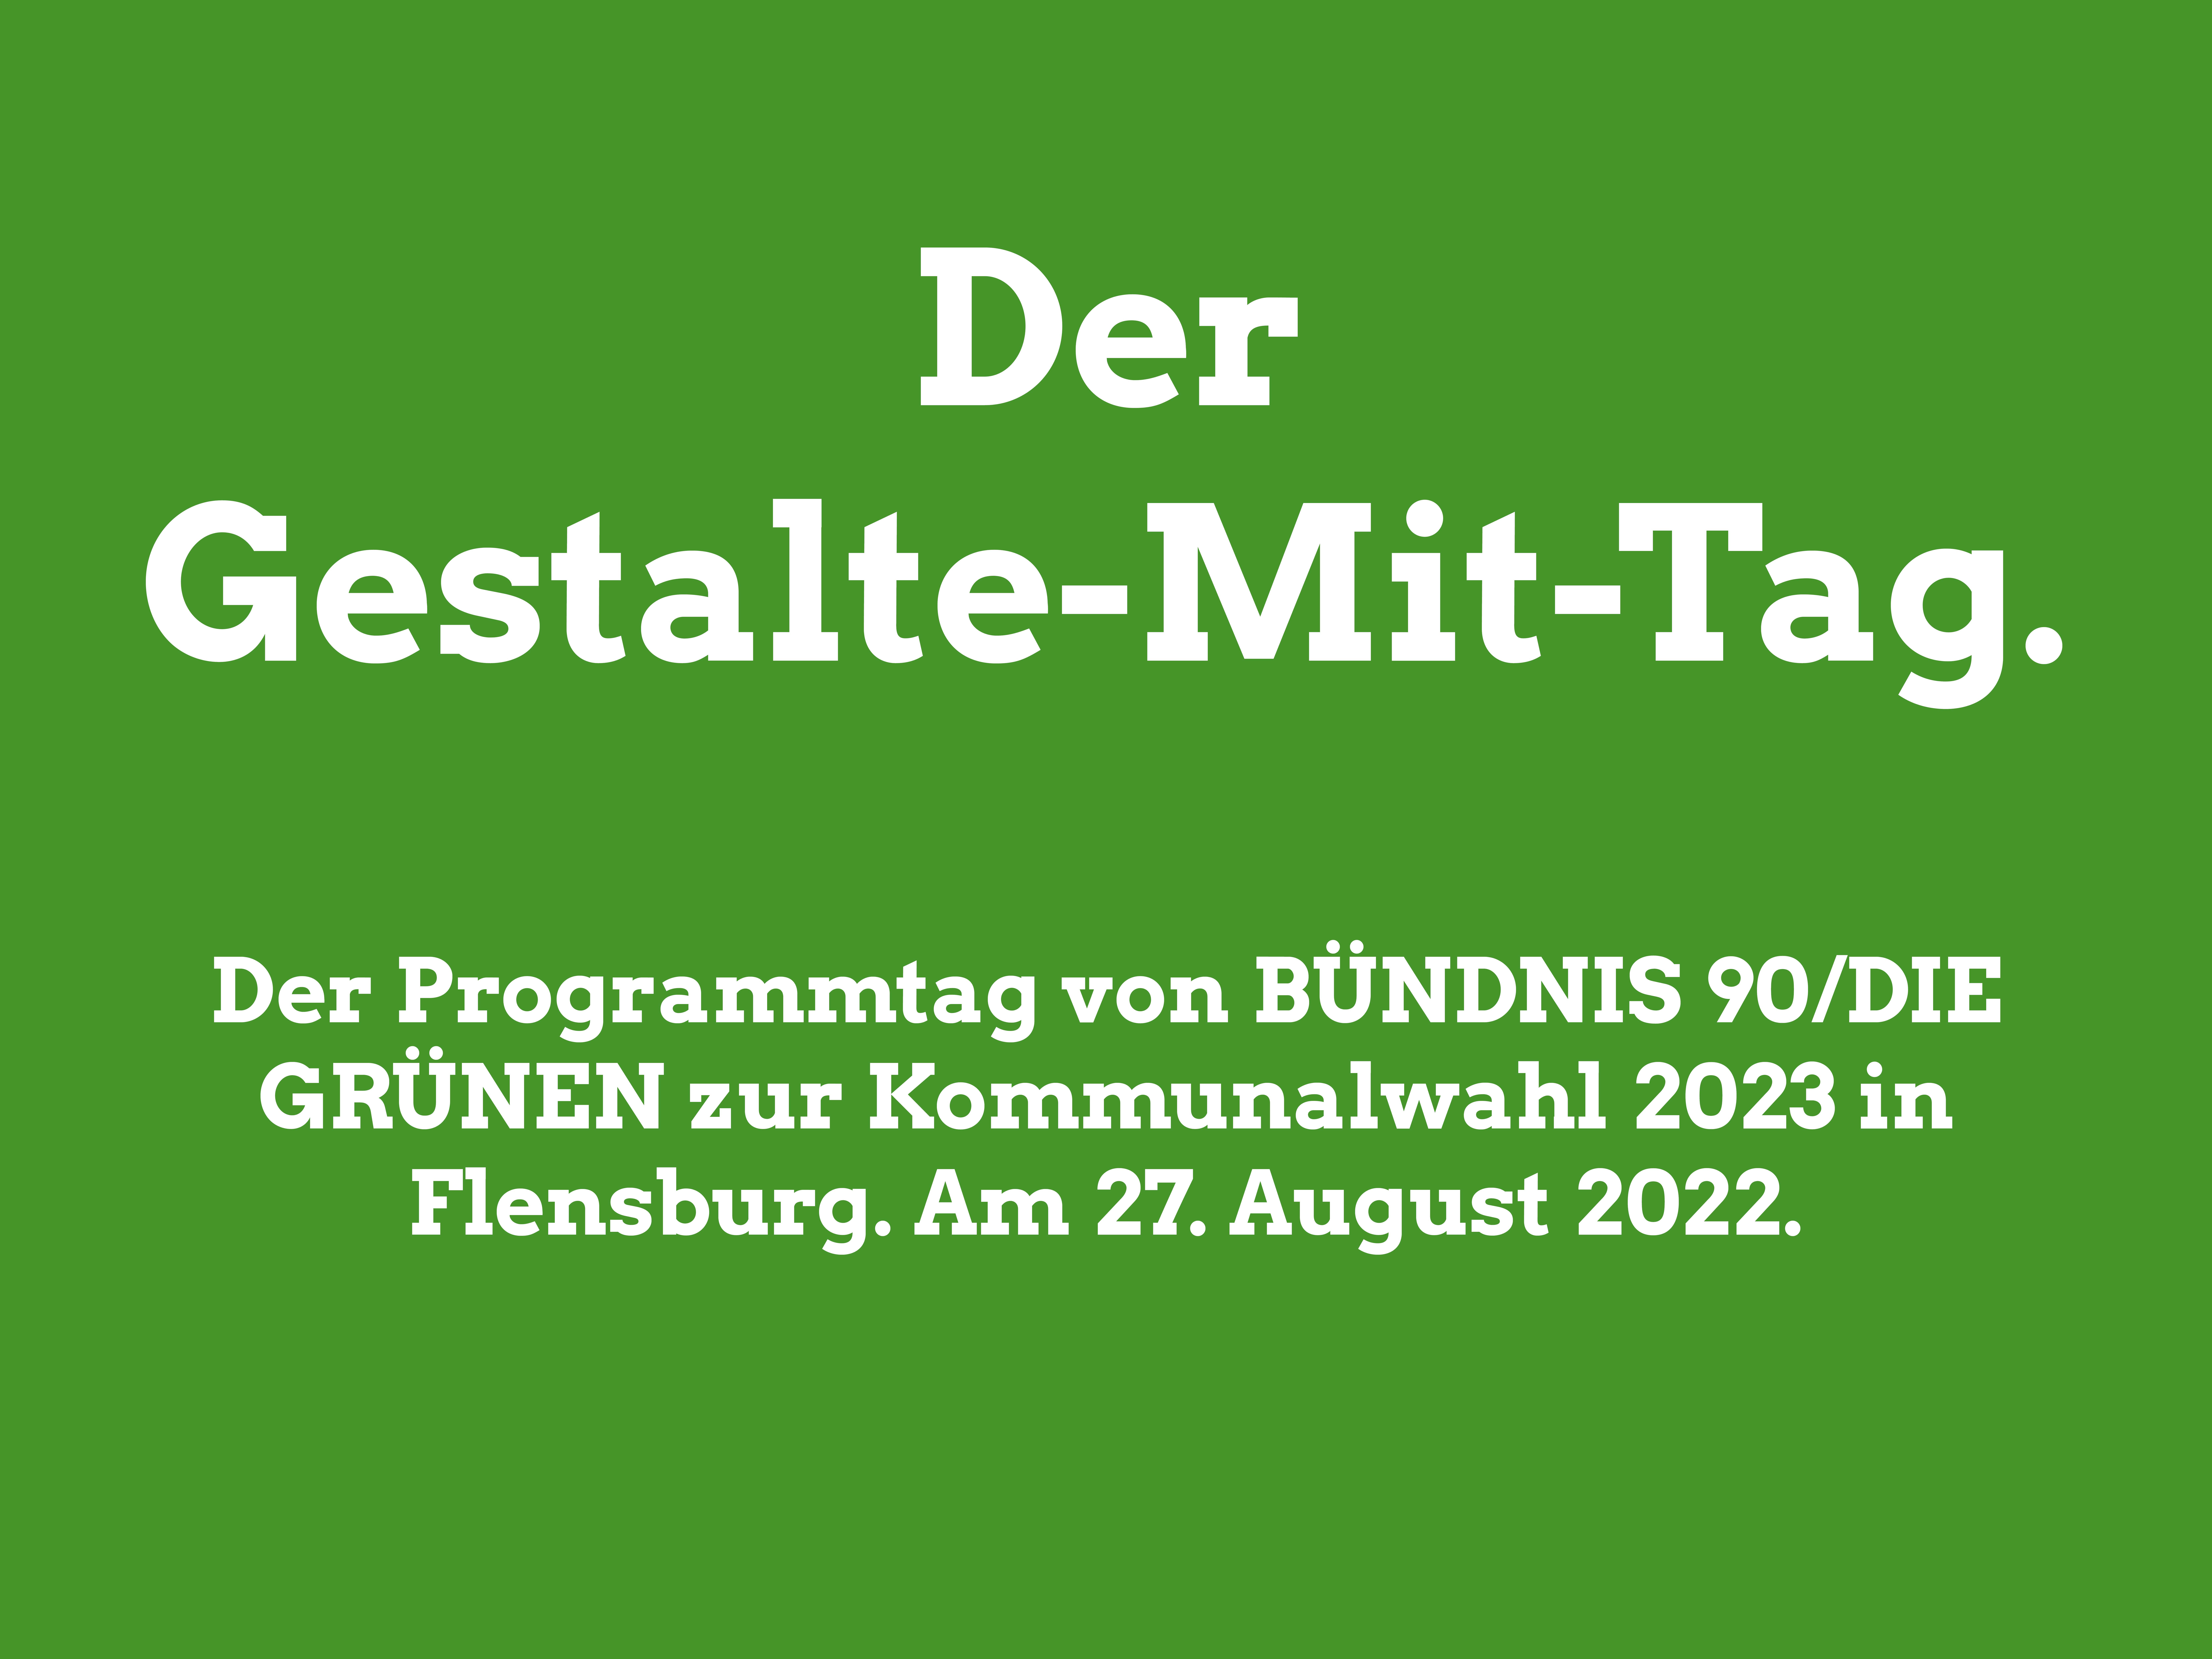 Unser Flensburg gestalten: Programmtag am 27. August